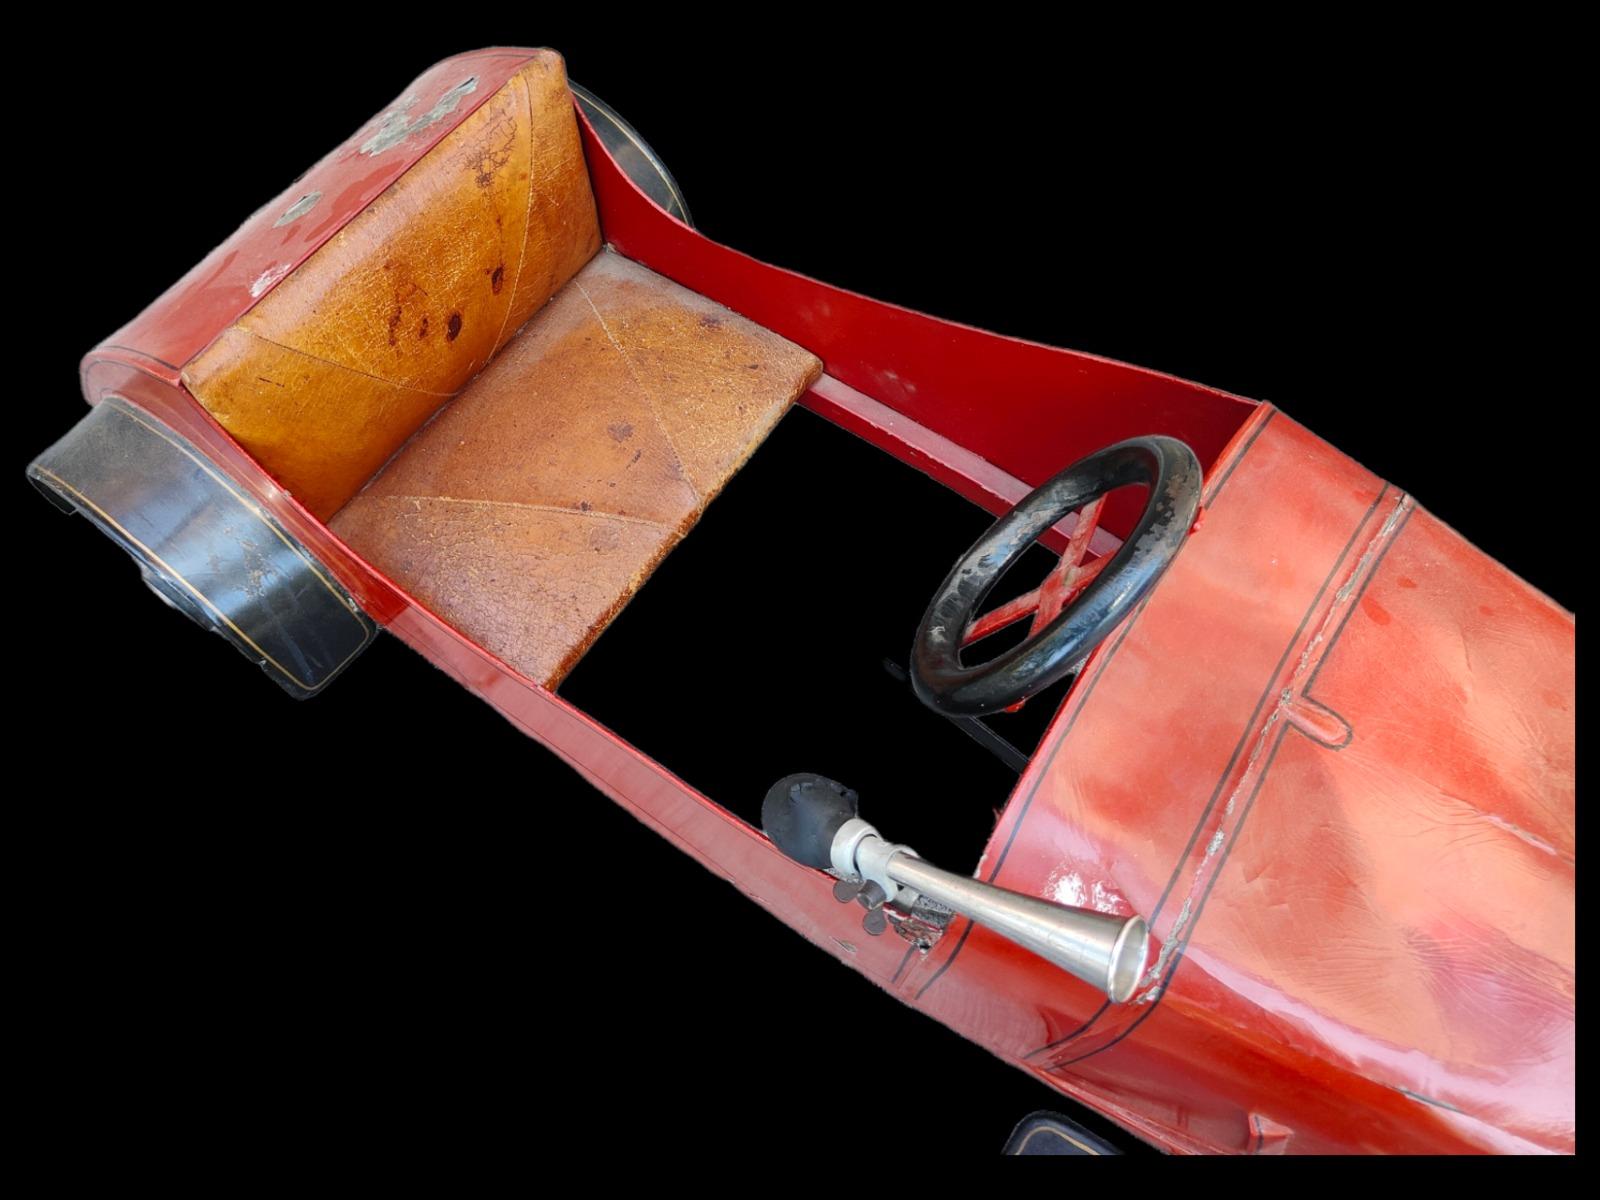 Voiture à pédales des années 30, Denia belle voiture à pédales elle est fabriquée à denia dans la décennie des années 30 bien qu'elle n'ait aucune marque ou étiquette visible, il semble qu'il s'agisse d'une voiture fabriquée par la société La Vasco-